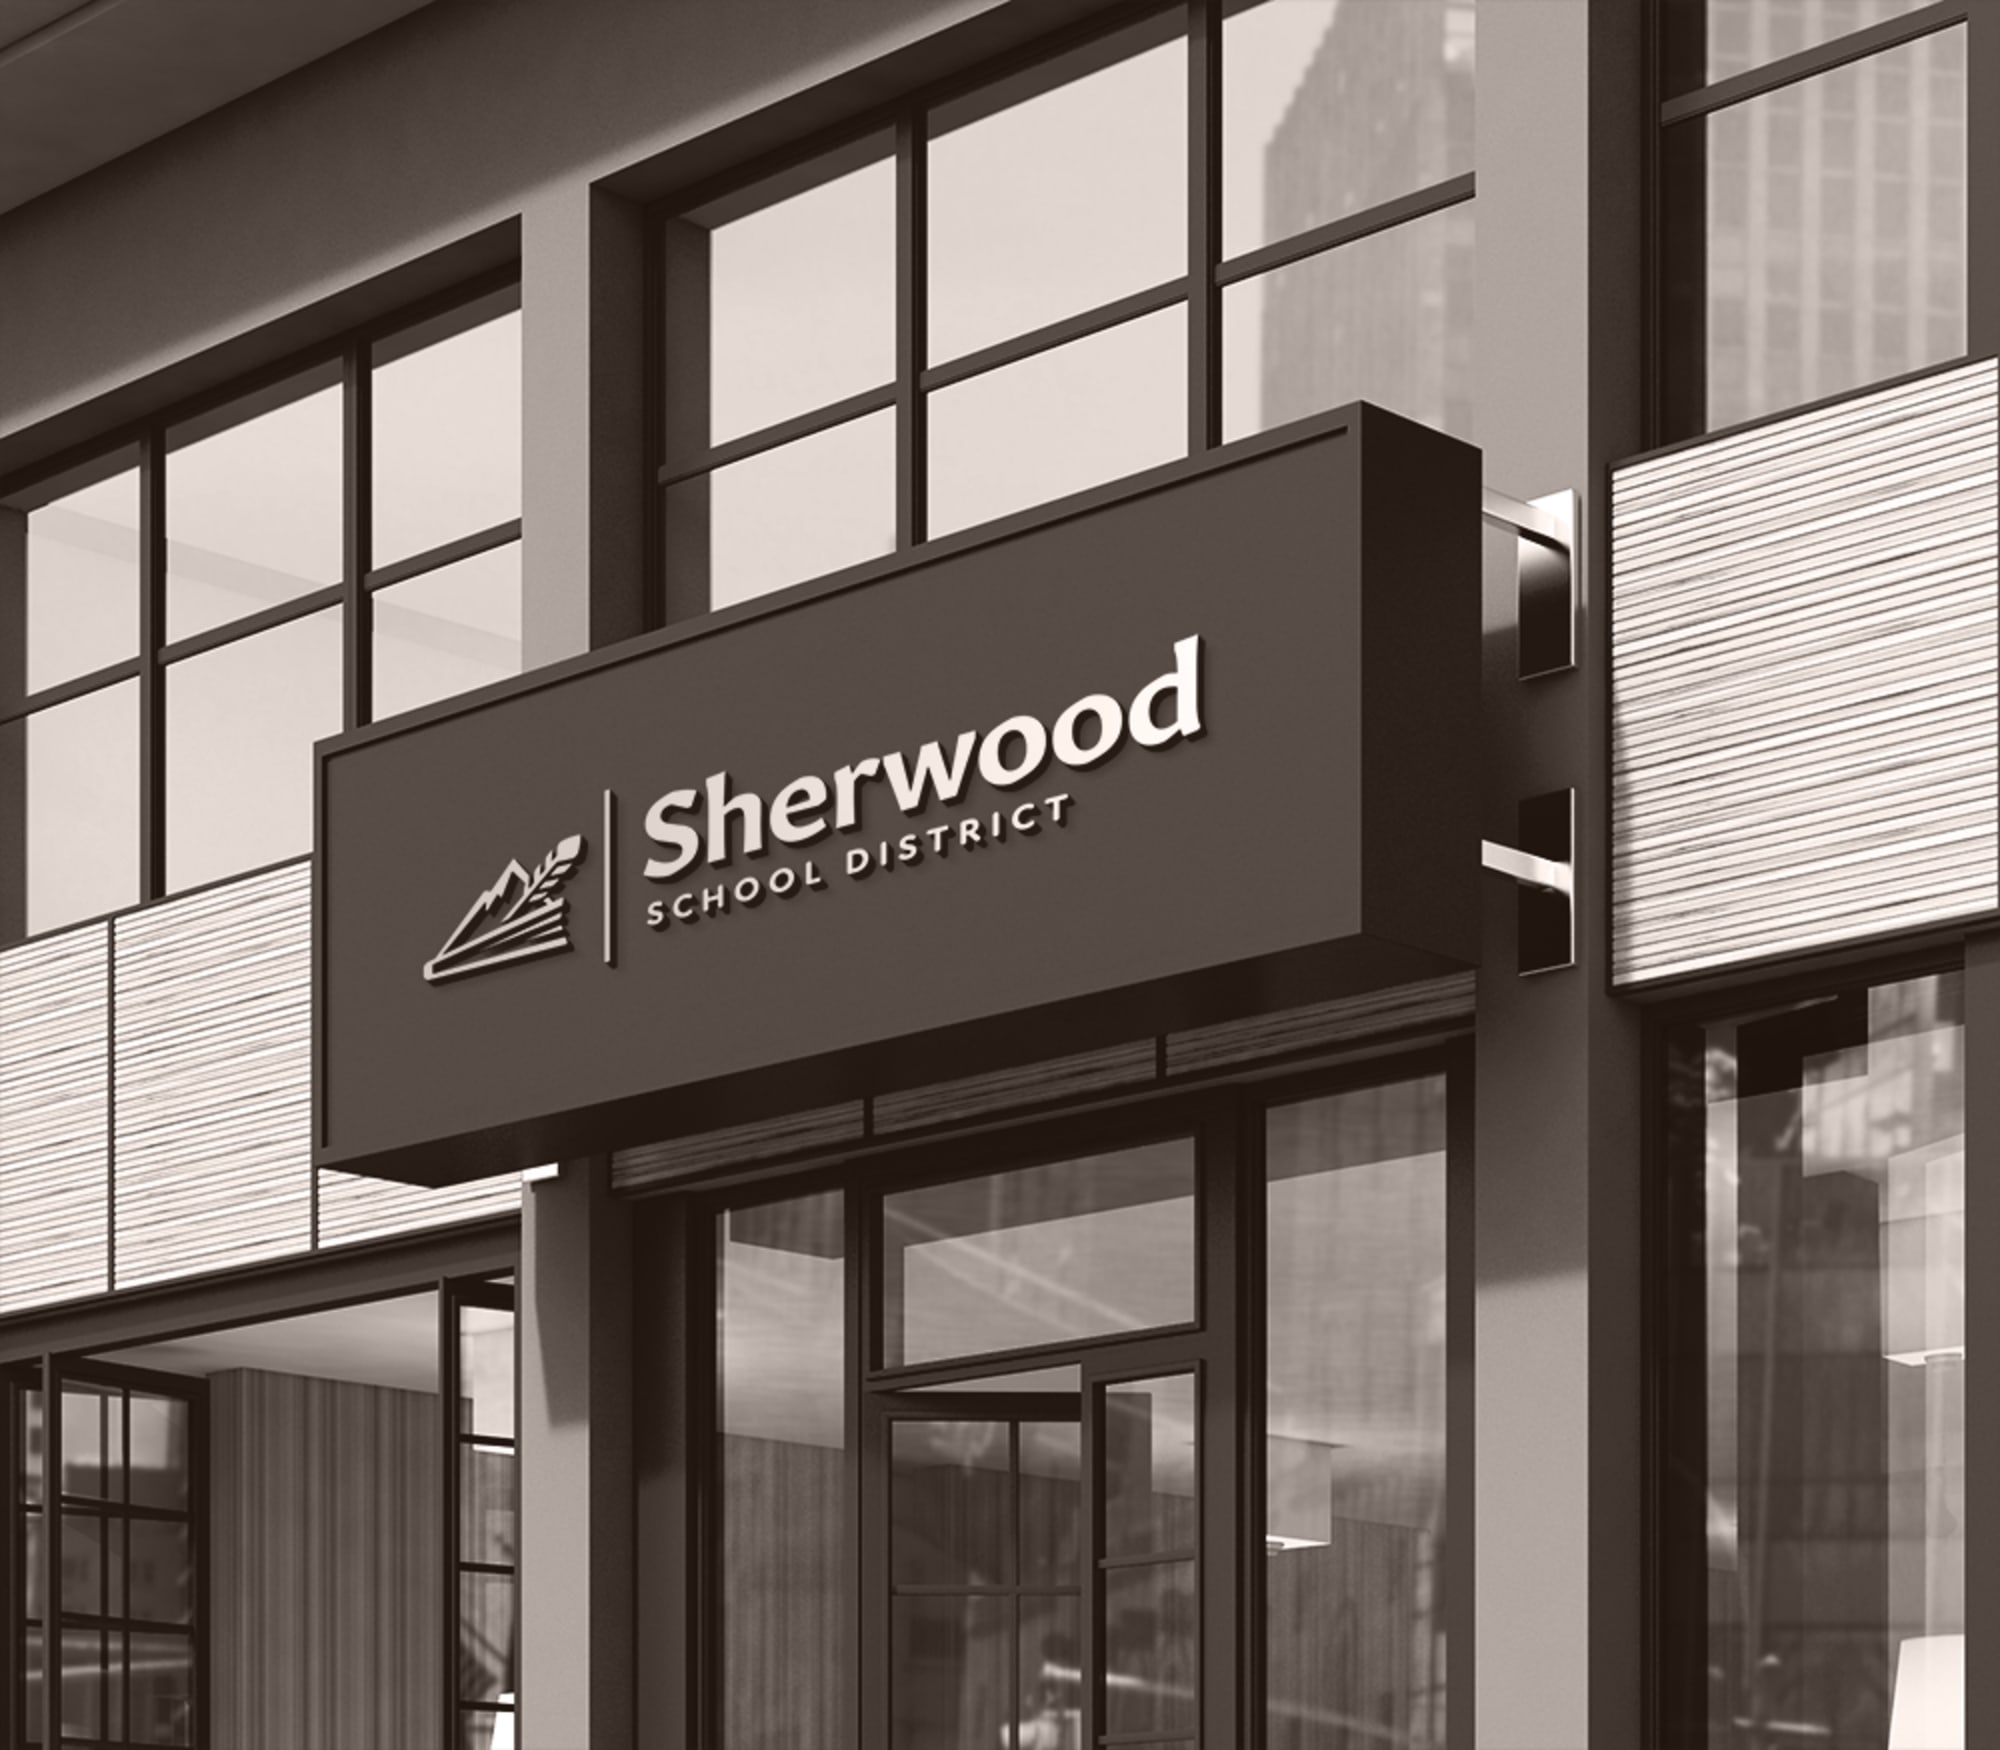 Sherwood District Building Signage Mockup